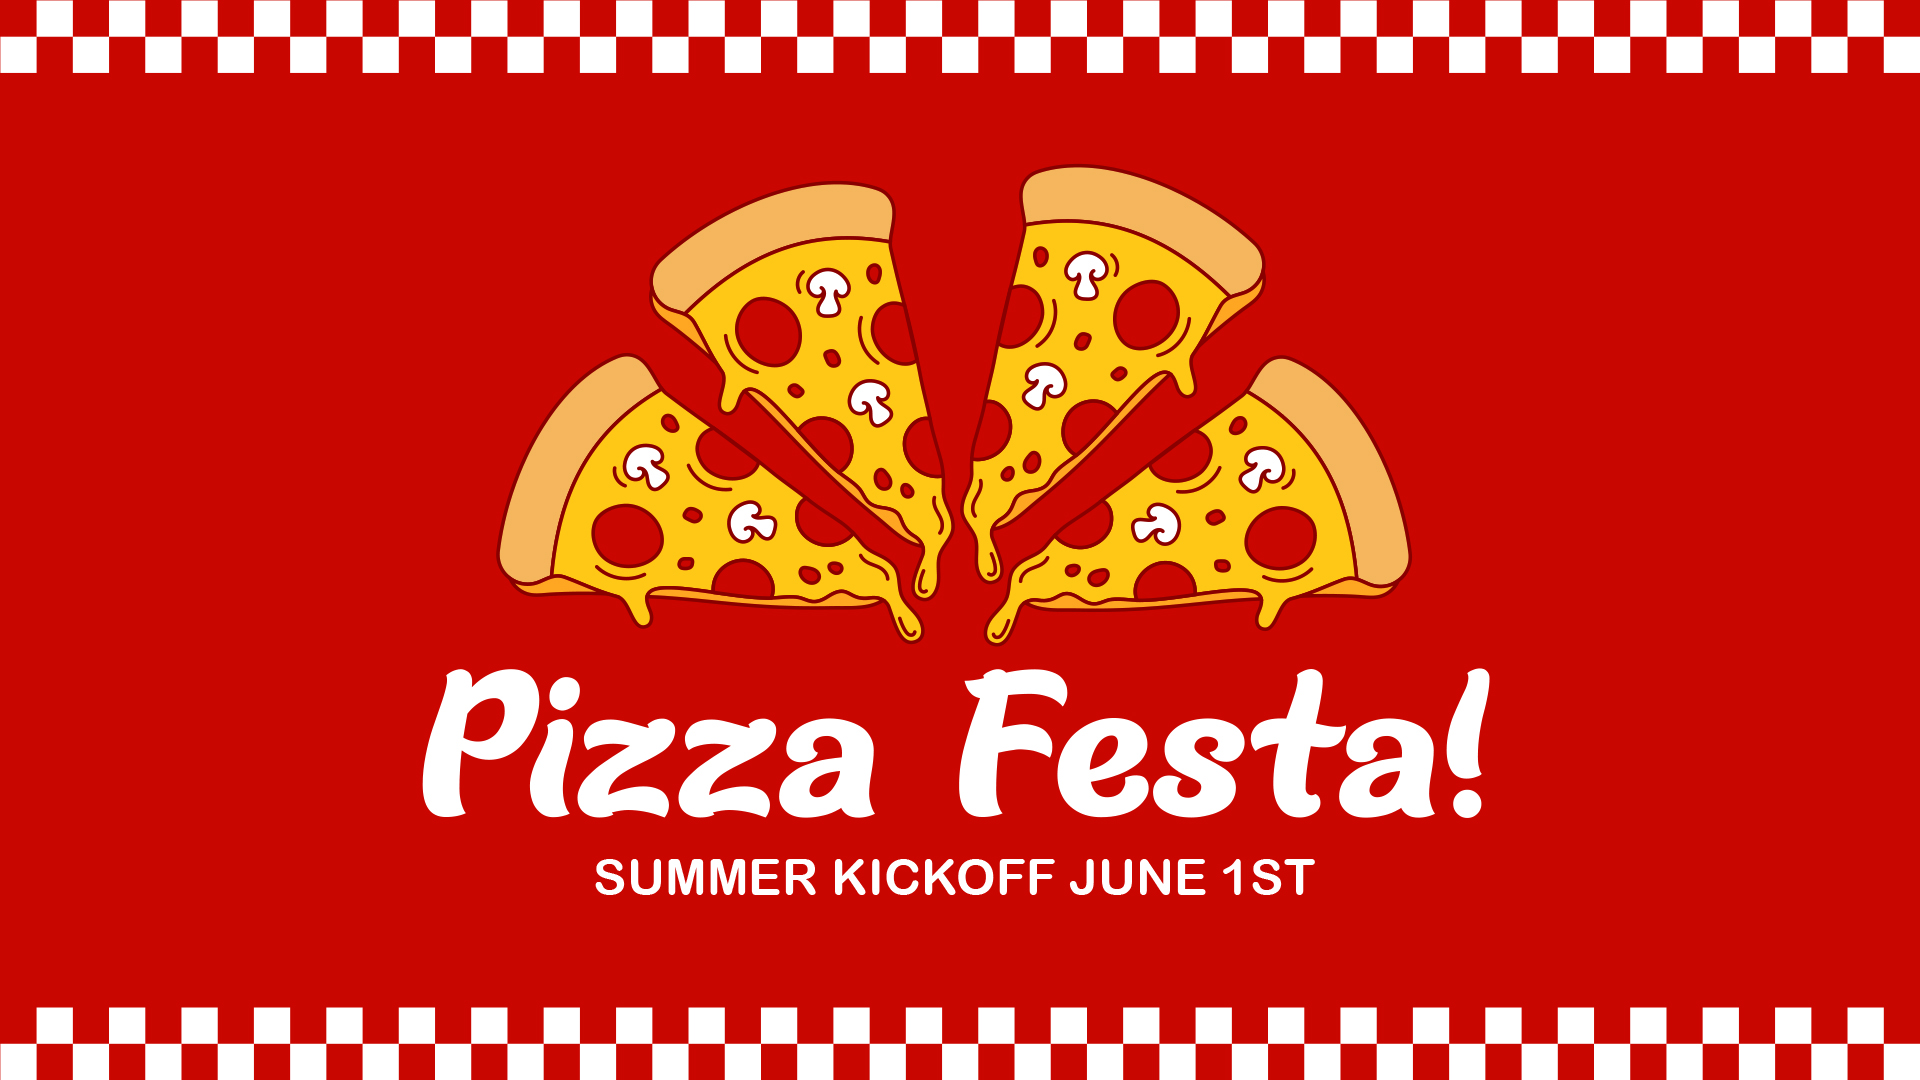 Pizza Festa Summer Kickoff